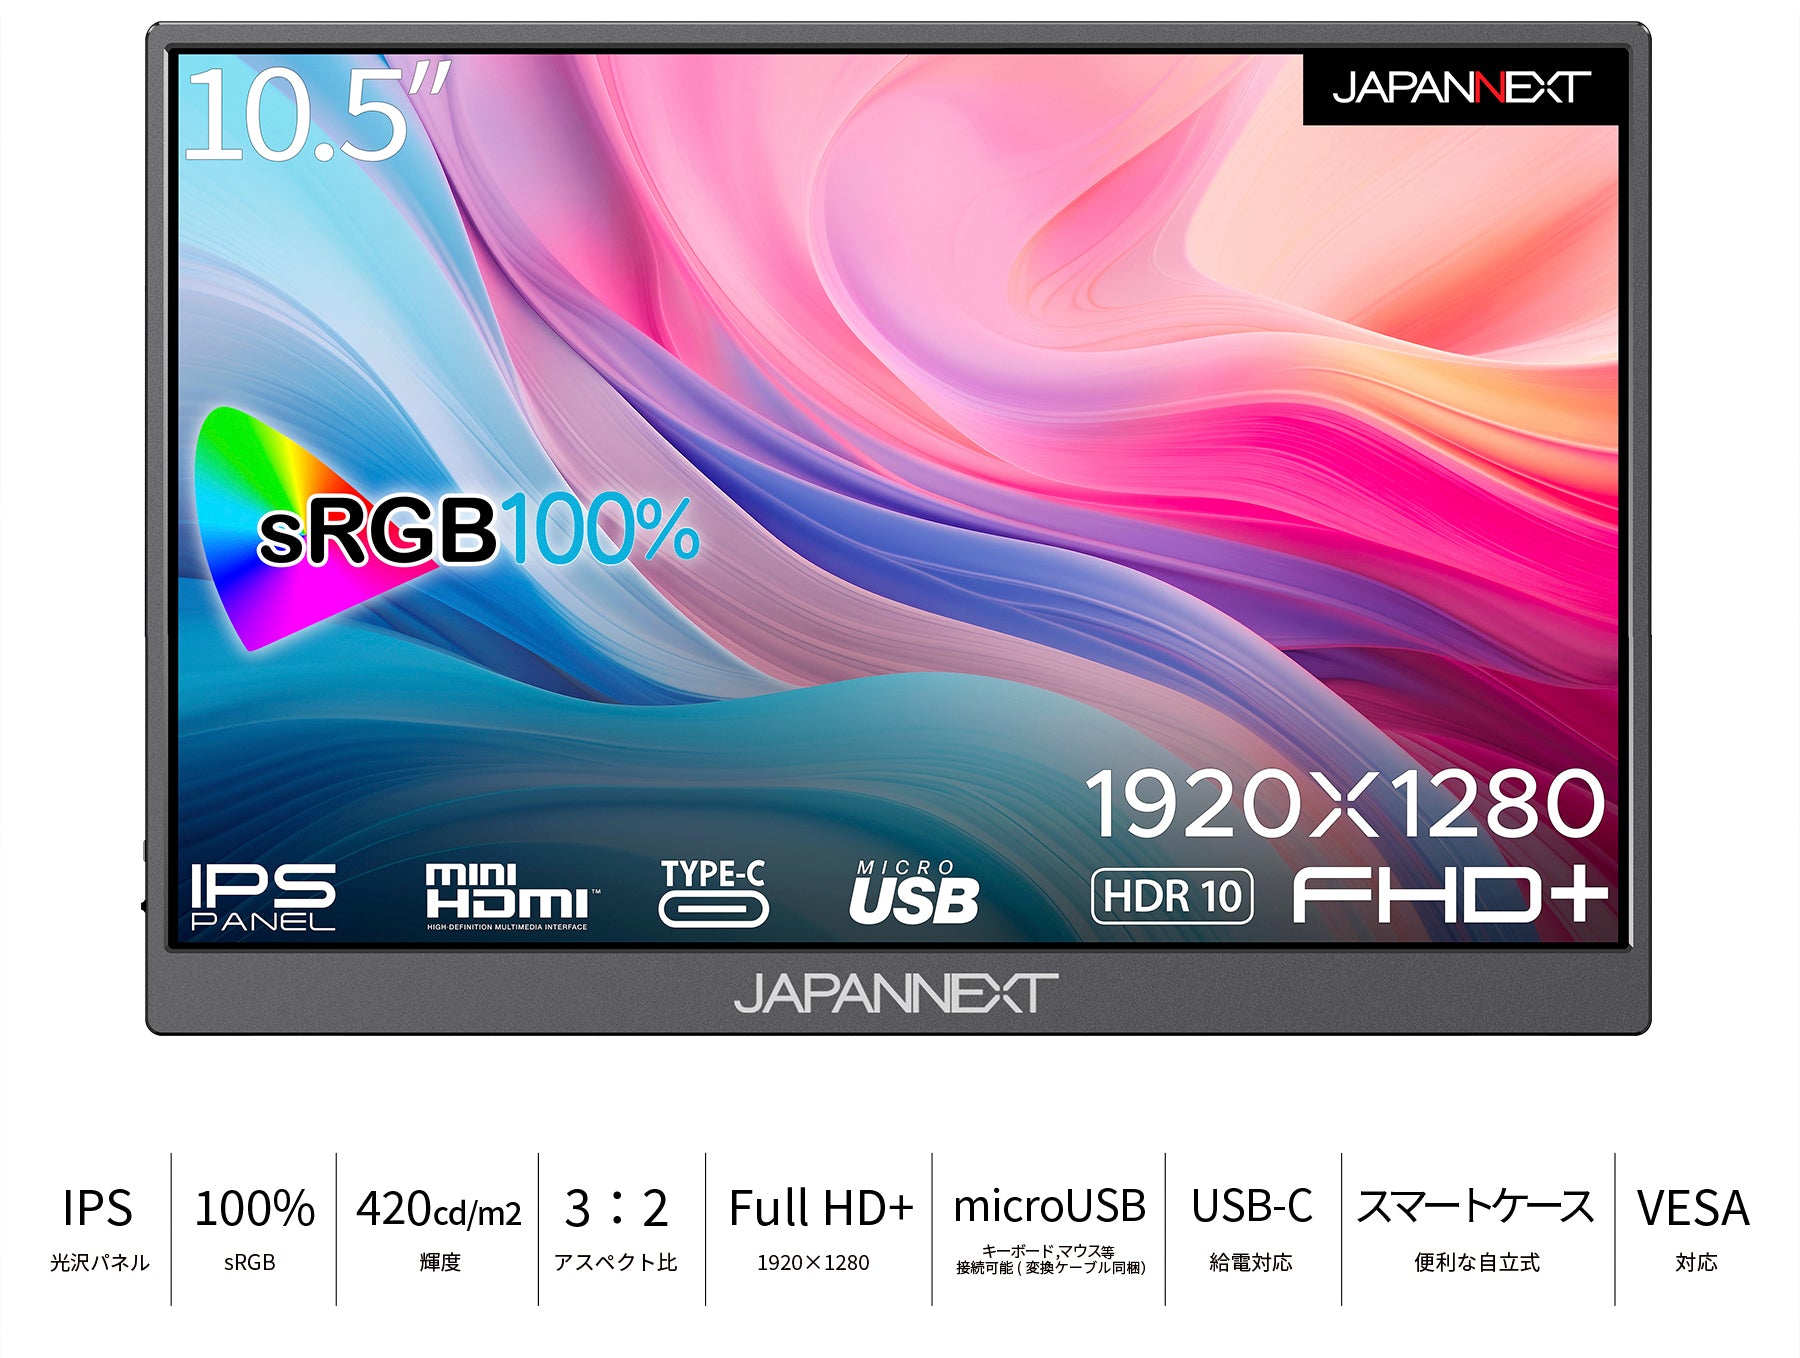 JAPANNEXT 10.5インチ IPSパネル フルHD+(1920x1280)解像度 モバイル 